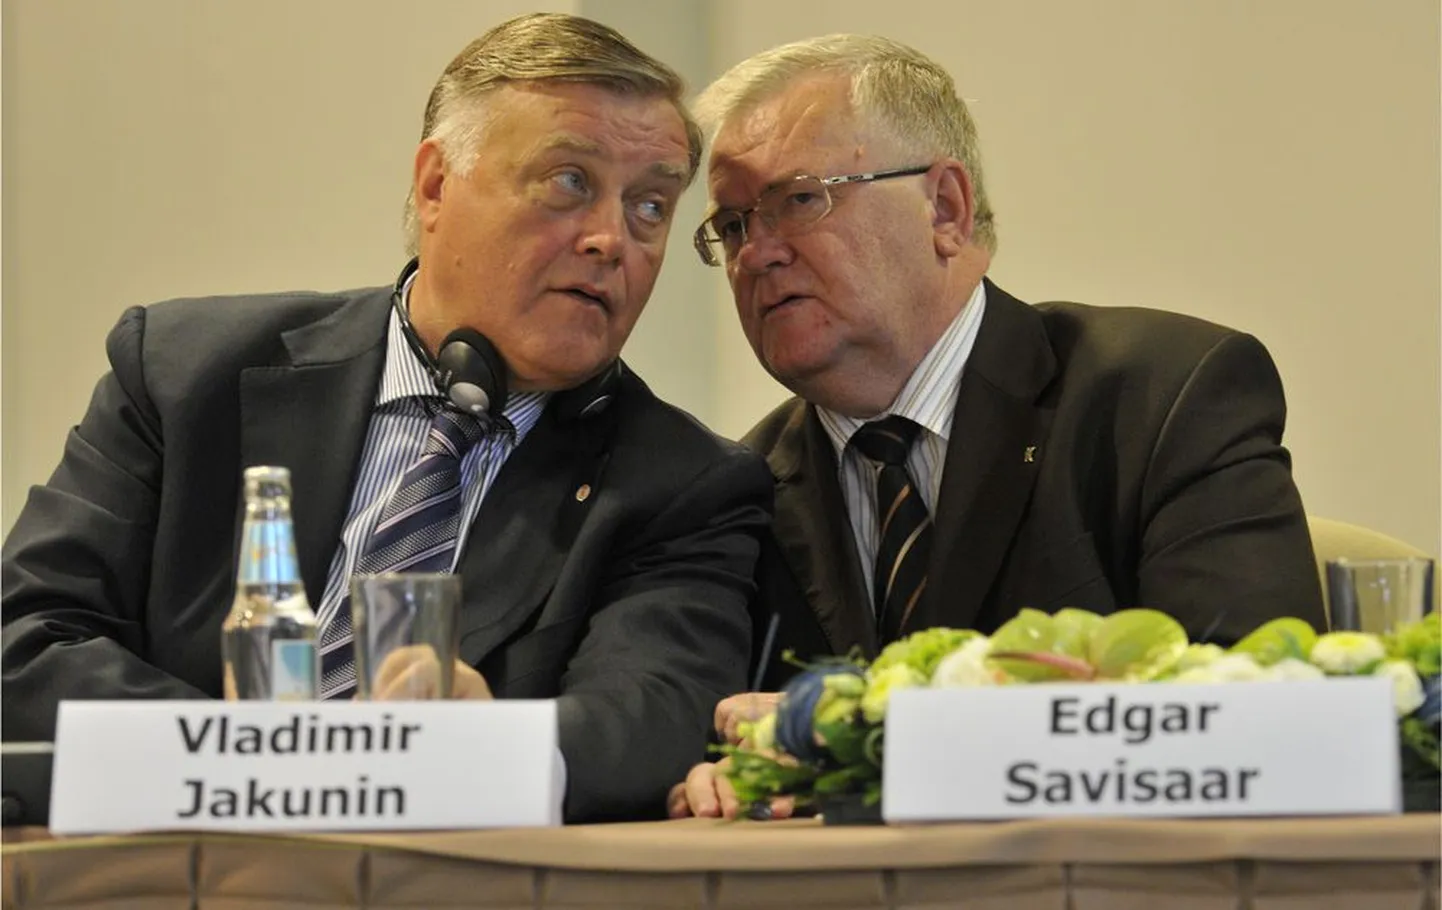 Venemaa Raudteede juht Vladimir Jakunin (vasakul) ja Tallinna linnapea Edgar Savisaar.